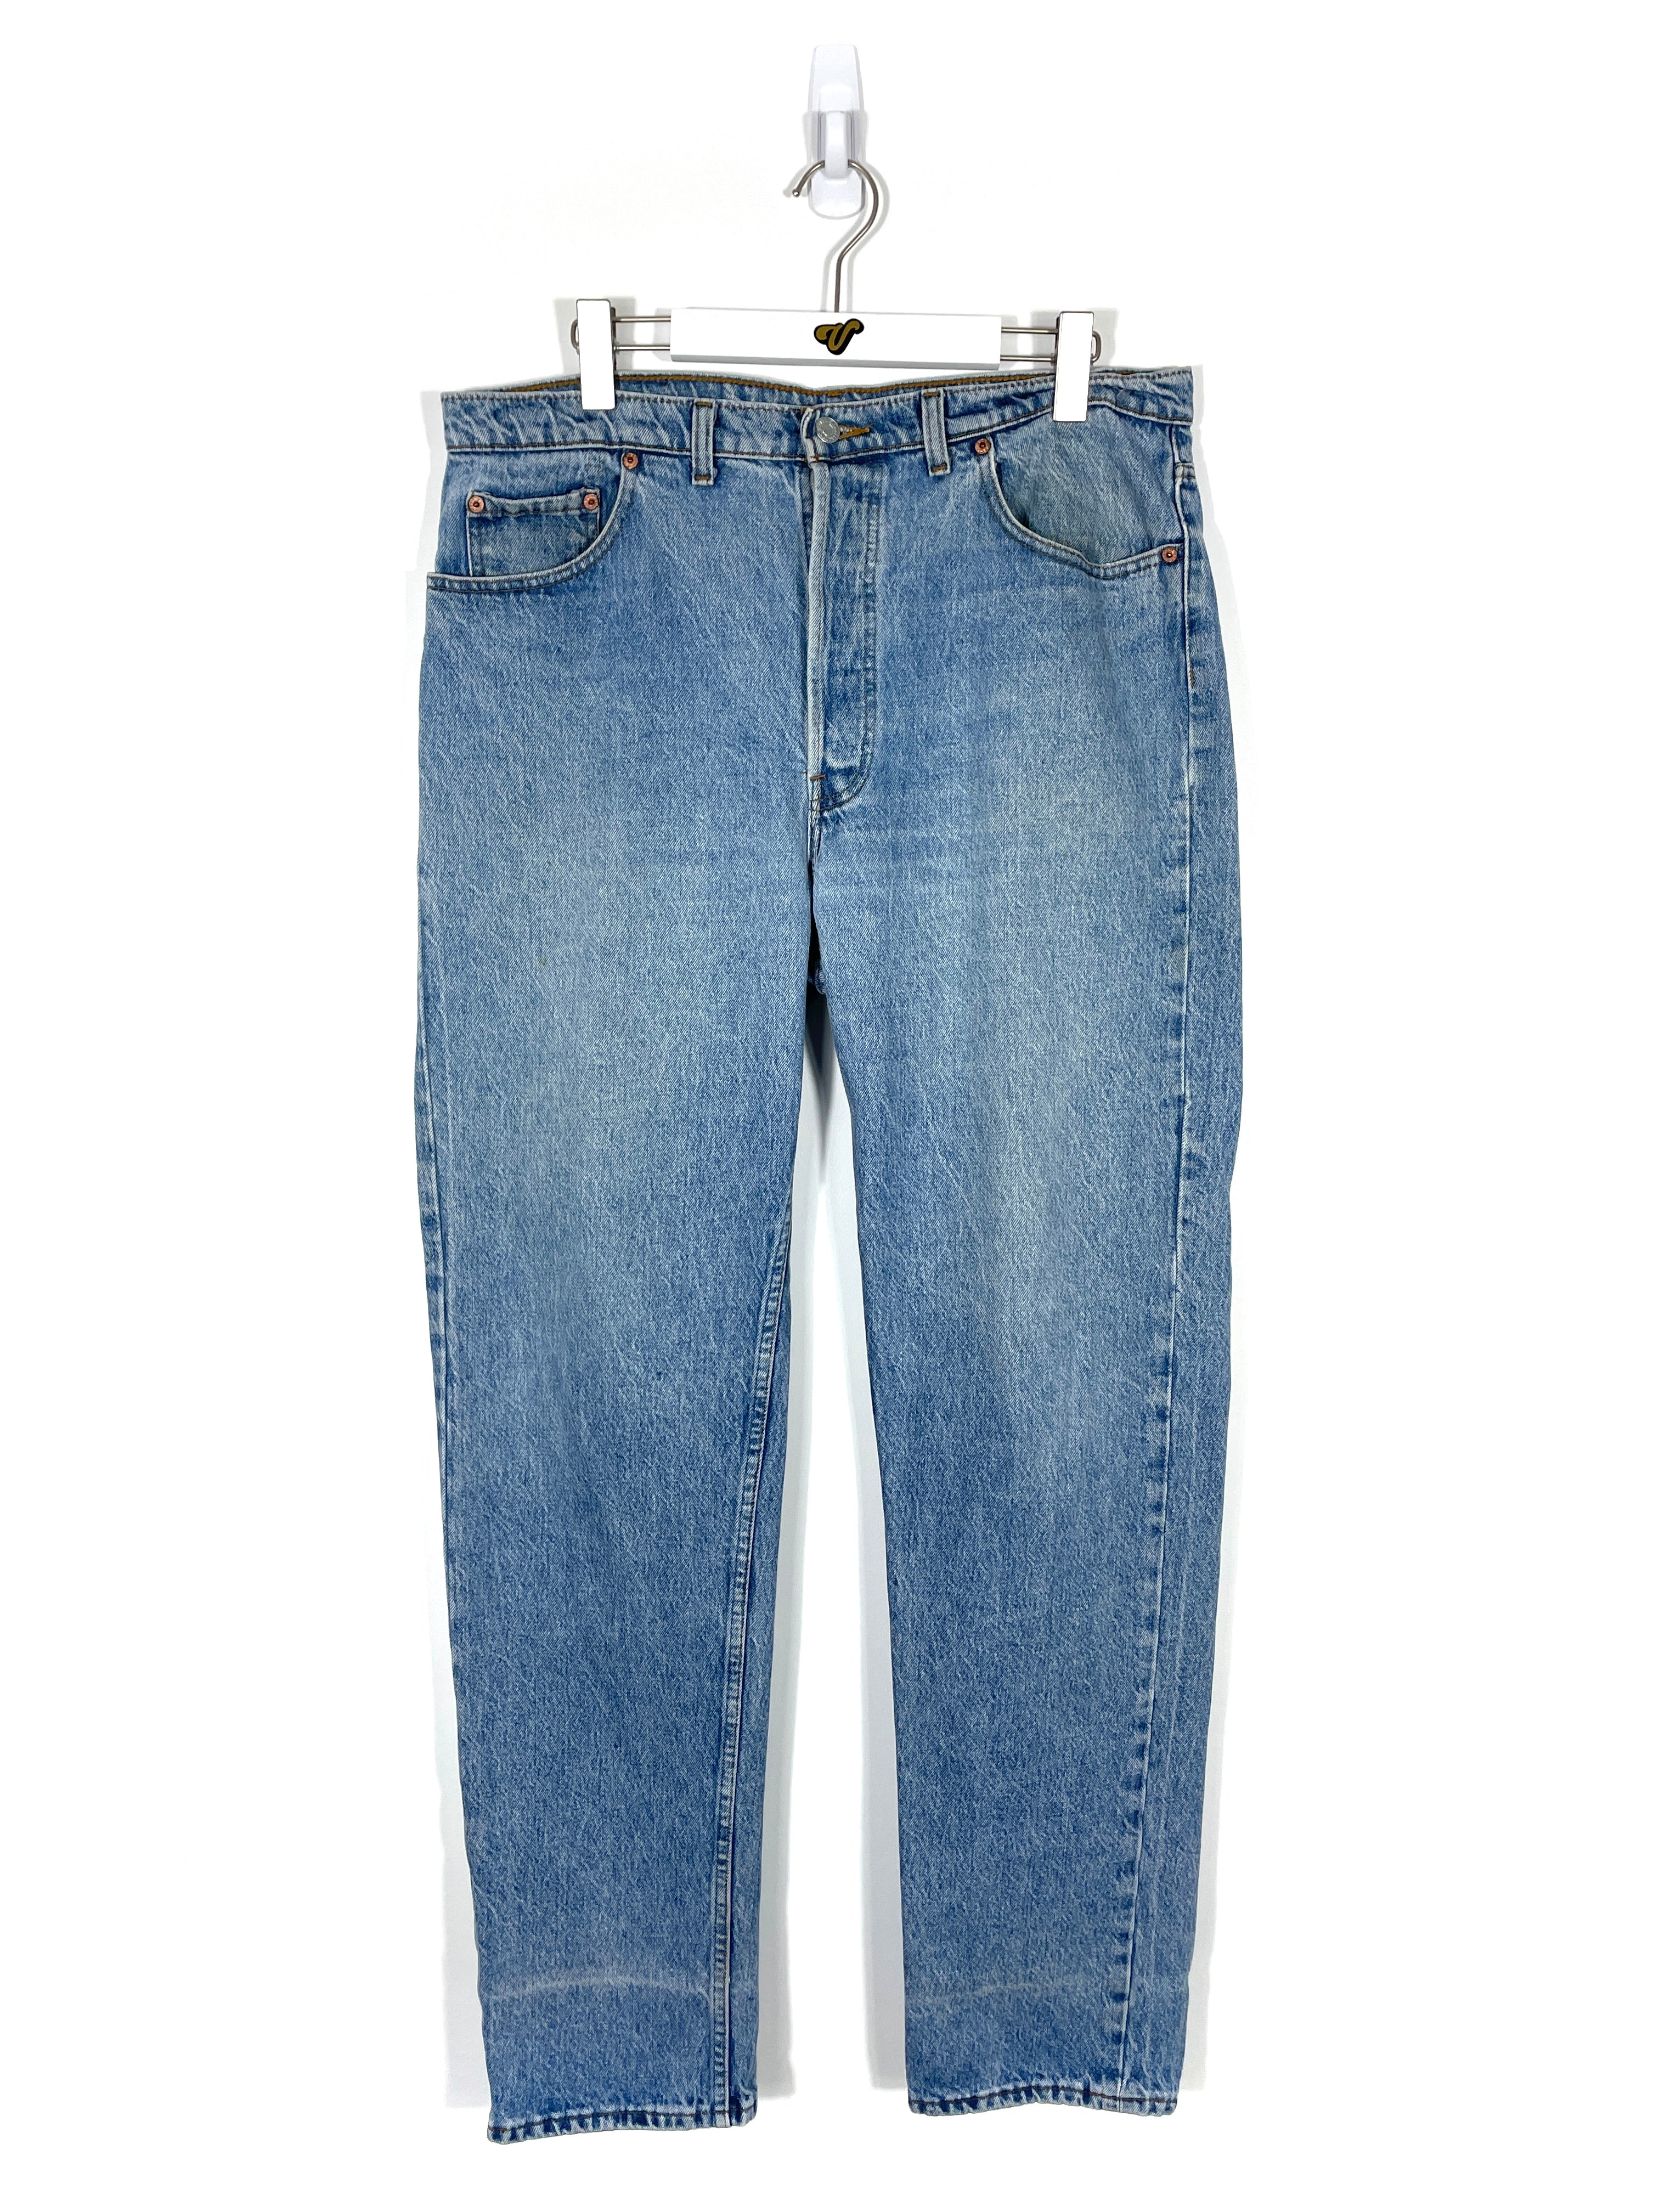 Title: Vintage Levis 501 Jeans - Men's 38x34